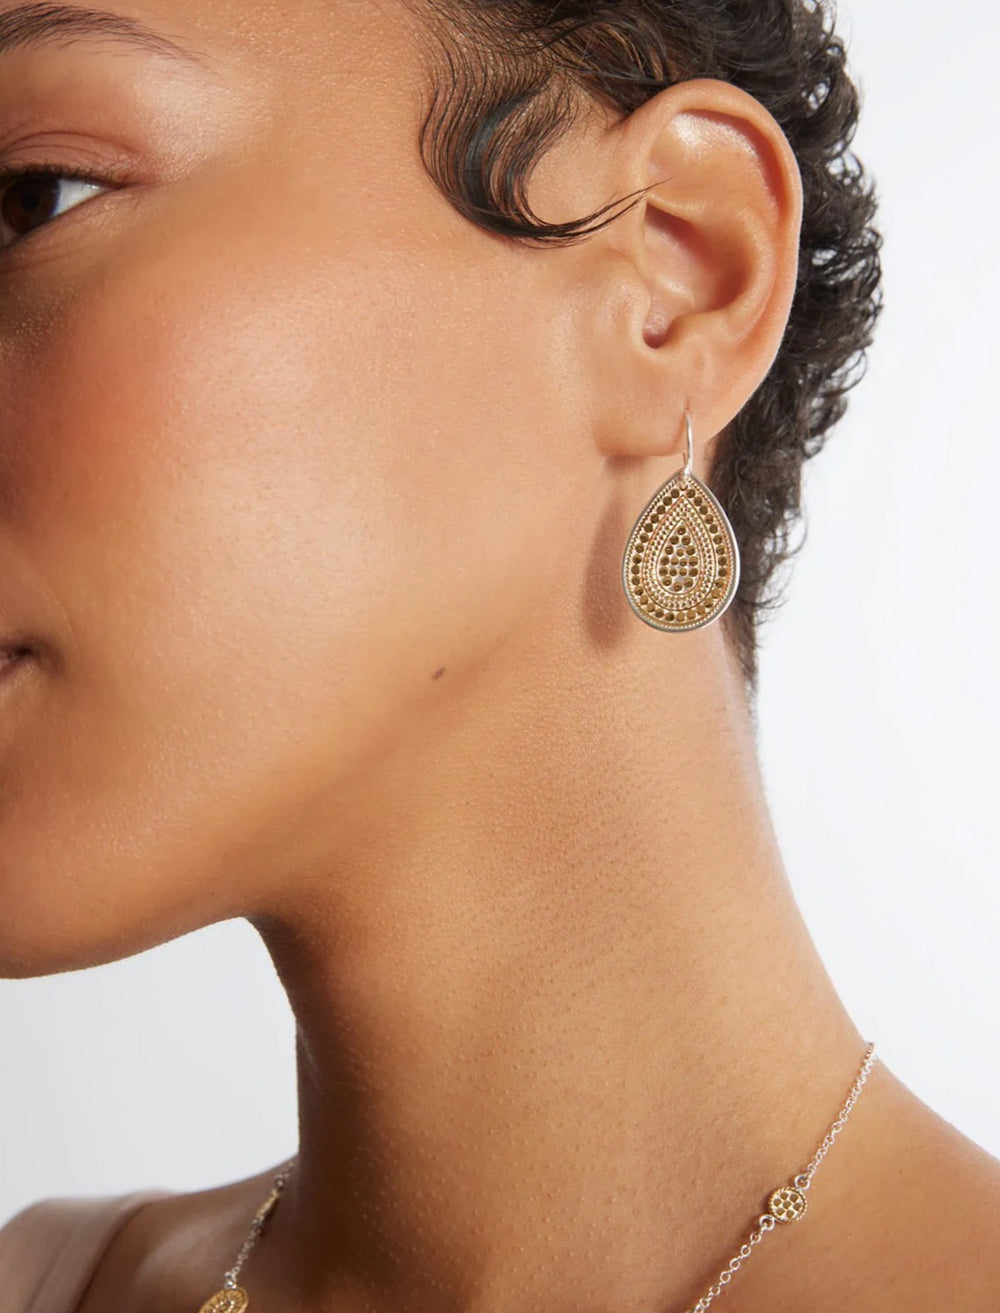 Model wearing Anna Beck's teardrop earrings in gold